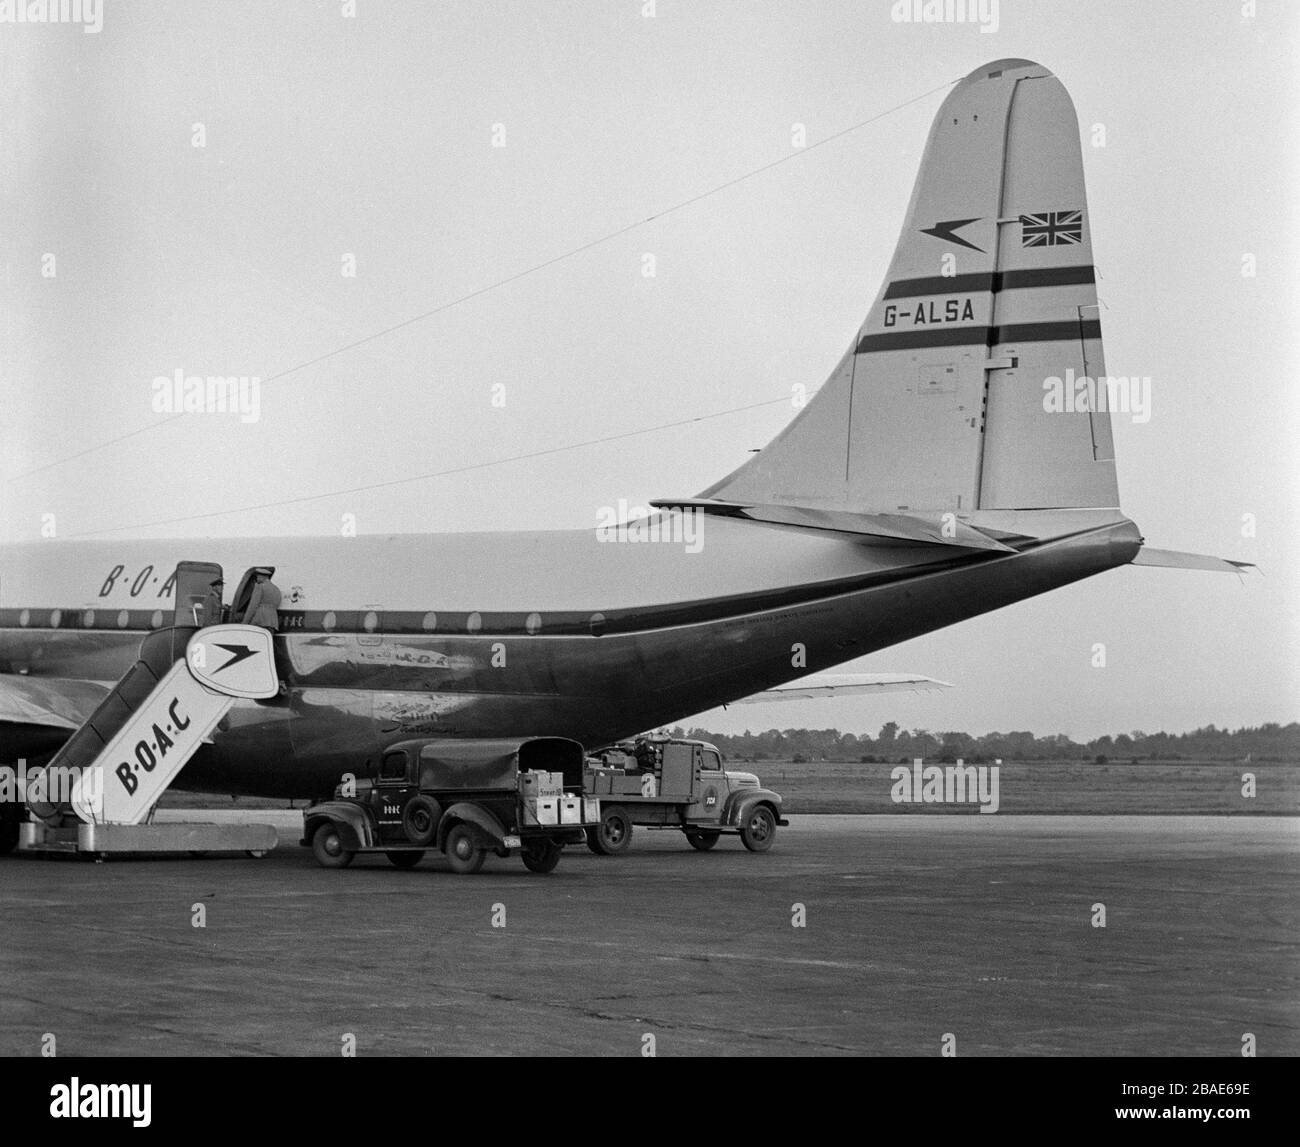 Foto in bianco e nero d'epoca scattata all'aeroporto di Montreal in Canada nel 1950, con un BoAC Boeing 377 Stratocruiser, registrazione G-ALSA, in preparazione al decollo. Questo aereo si è schiantato a Prestwick, Scozia, il giorno di Natale del 1954, uccidendo 28 persone. Foto Stock